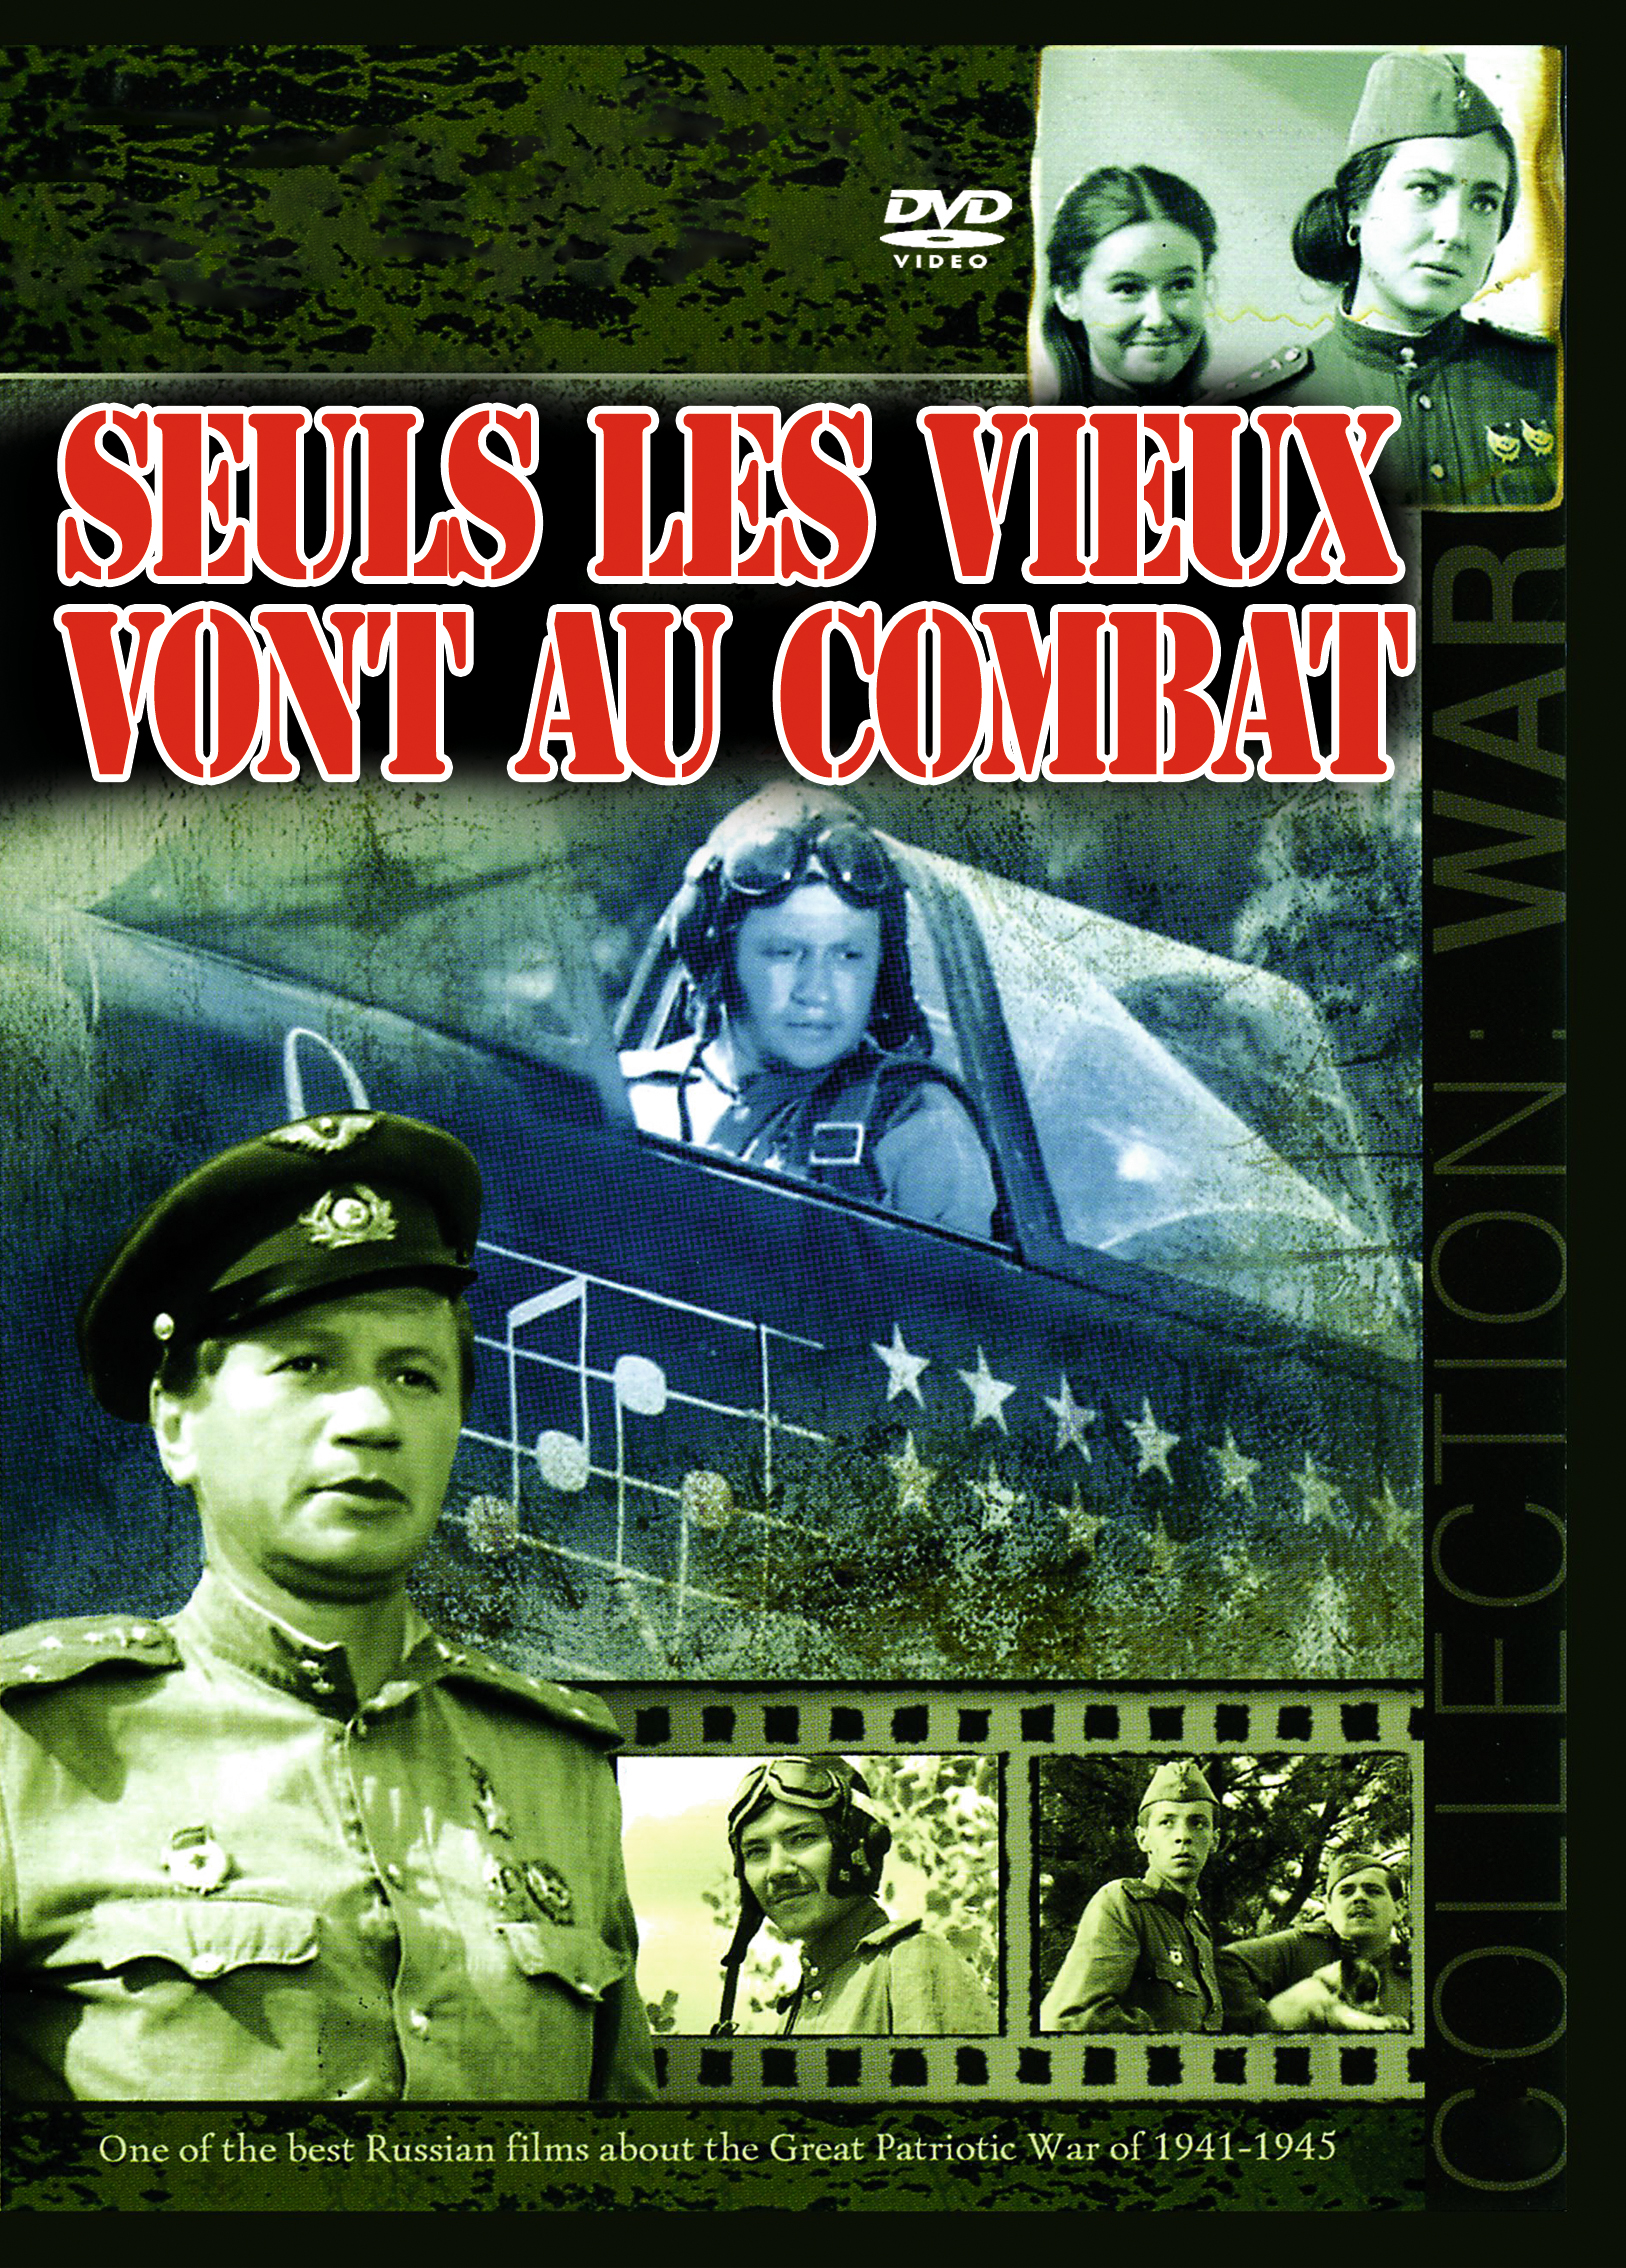 Combat Vieux au Seuls DVD von les